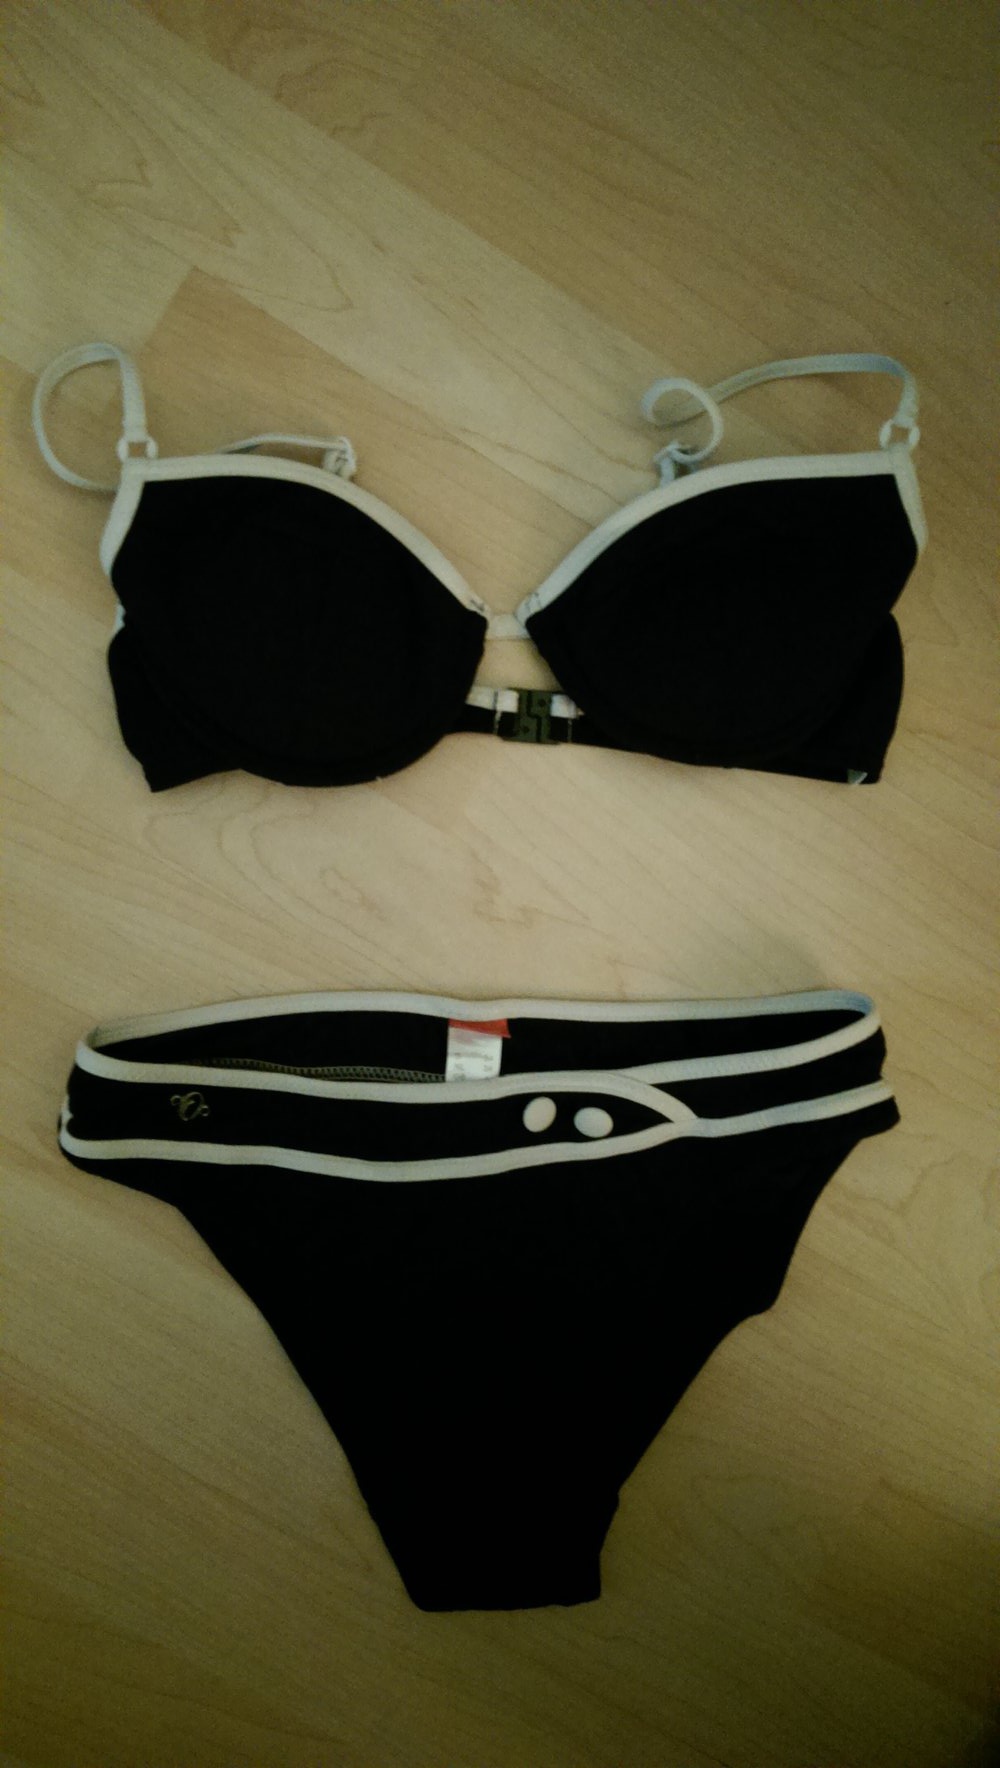 Bikini von s.Oliver in schwarz-weiß in 34 / XS (Push-up möglich)